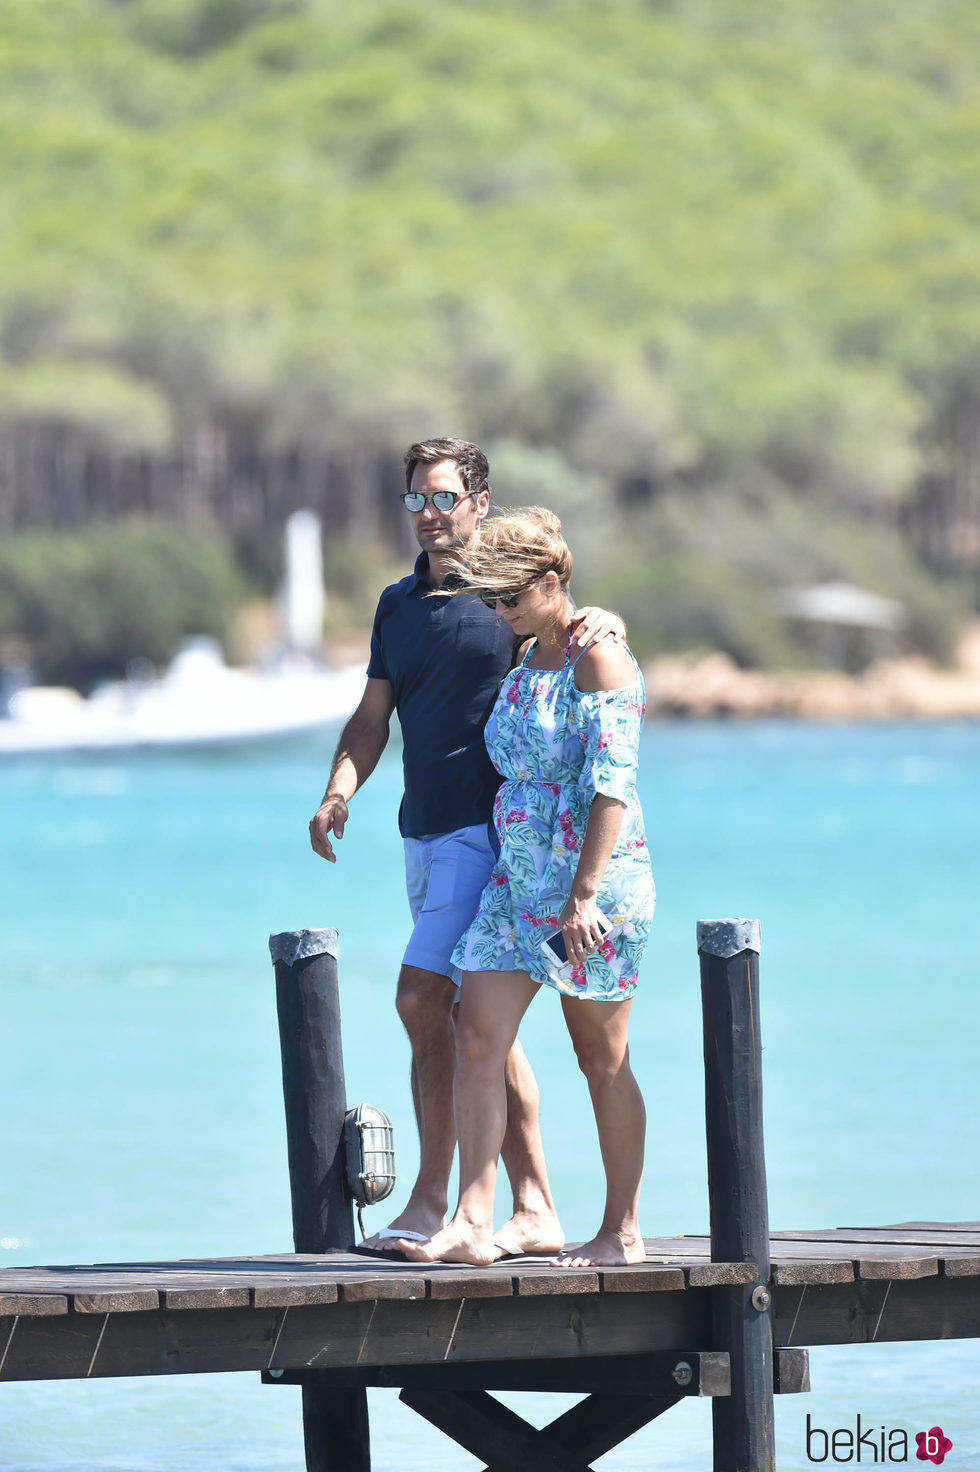 Roger y Mirka Federer dando un paseo por las playas de Cerdeña